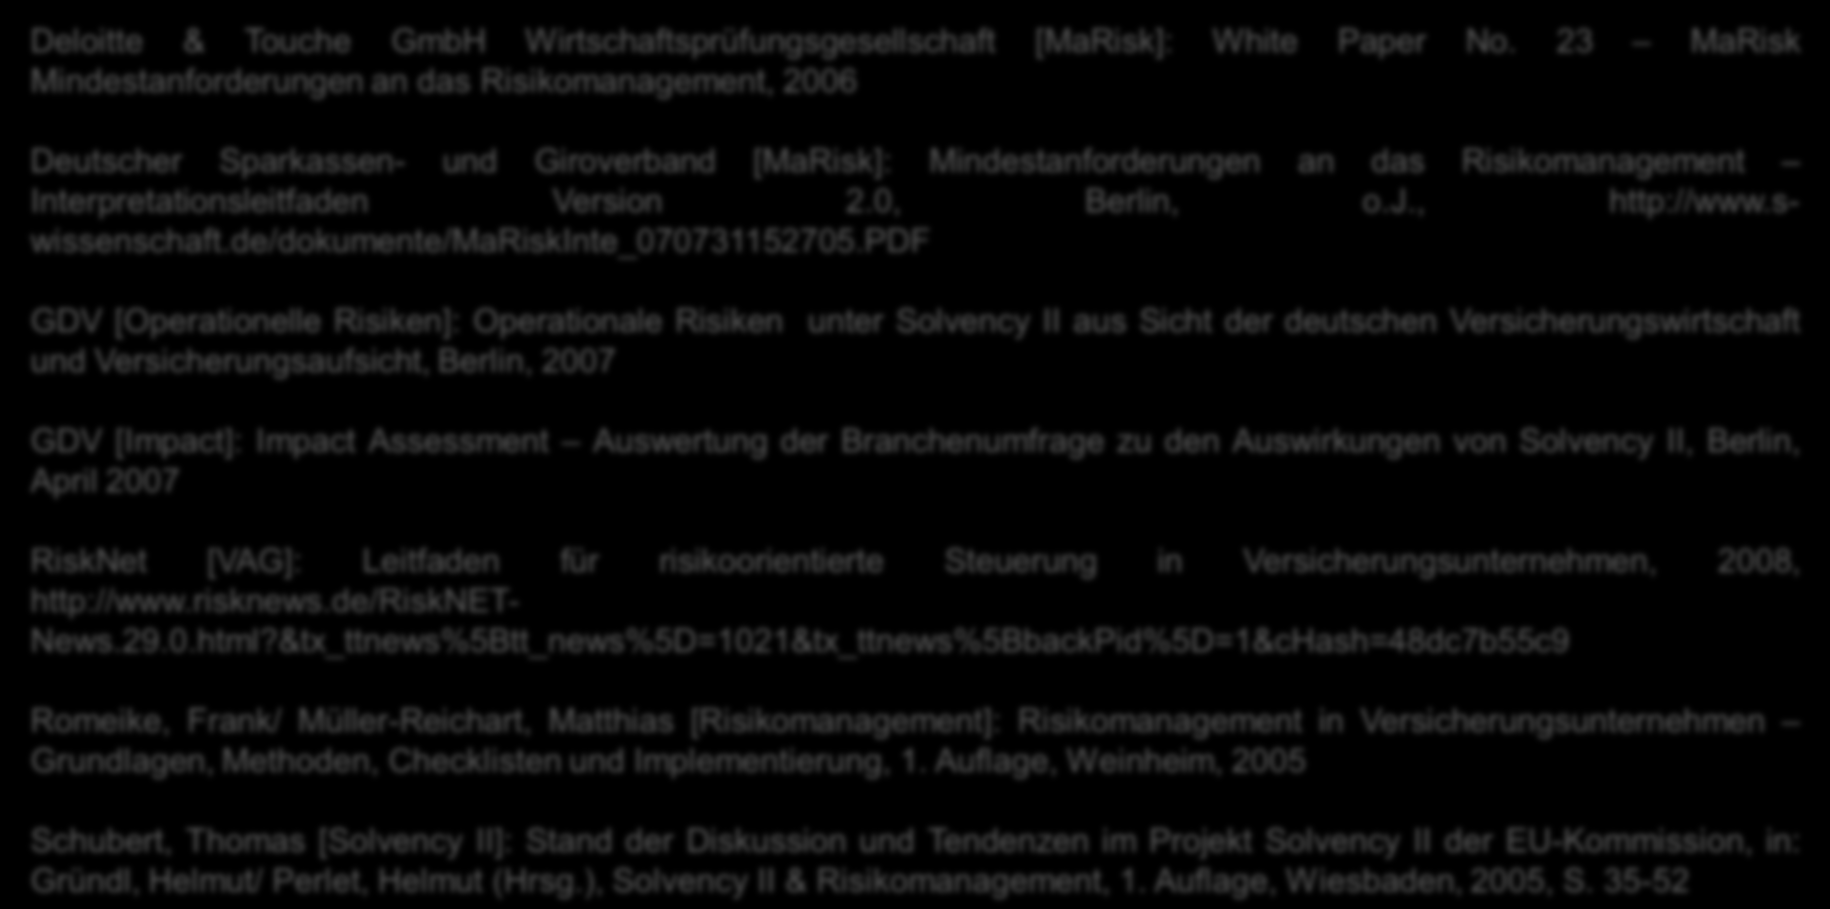 Quellenverzeichnis Deloitte & Touche GmbH Wirtschaftsprüfungsgesellschaft [MaRisk]: White Paper No.